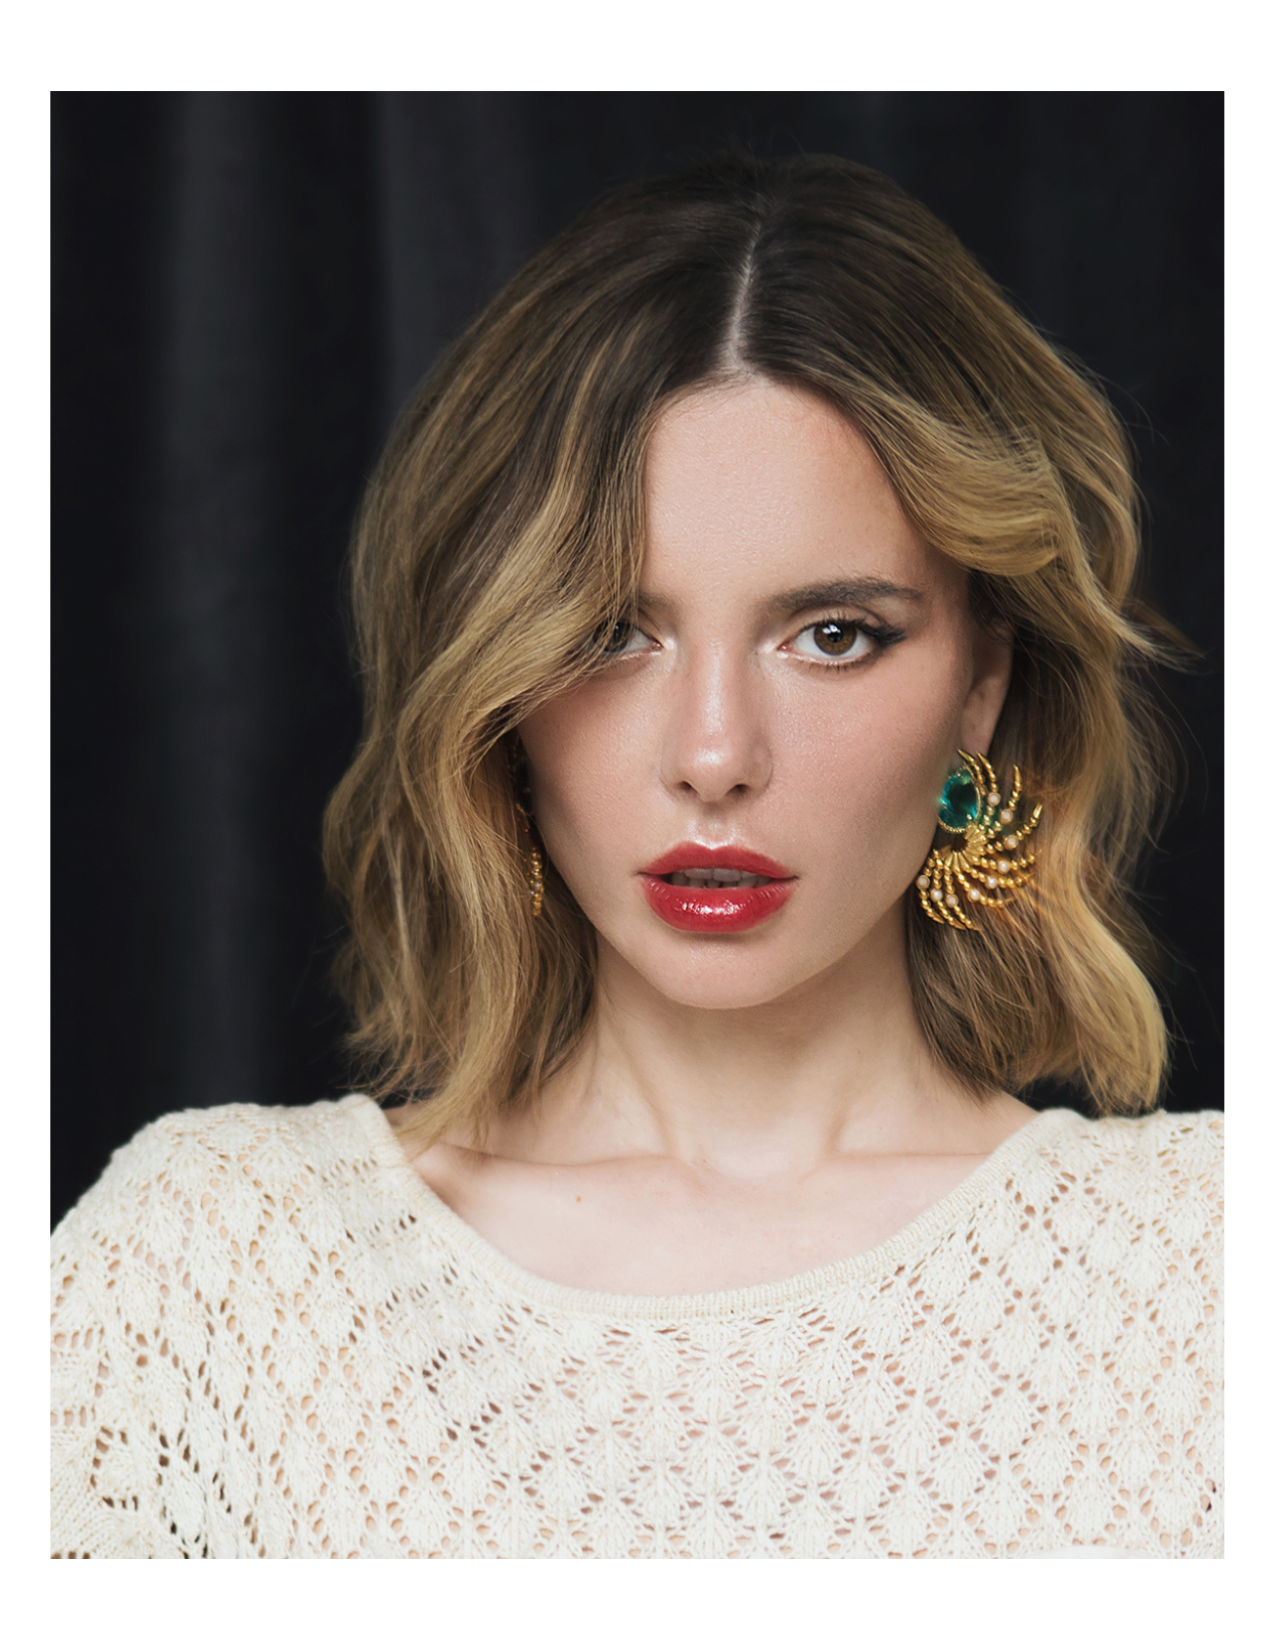 Daniela Millan earrings in magazine editorial